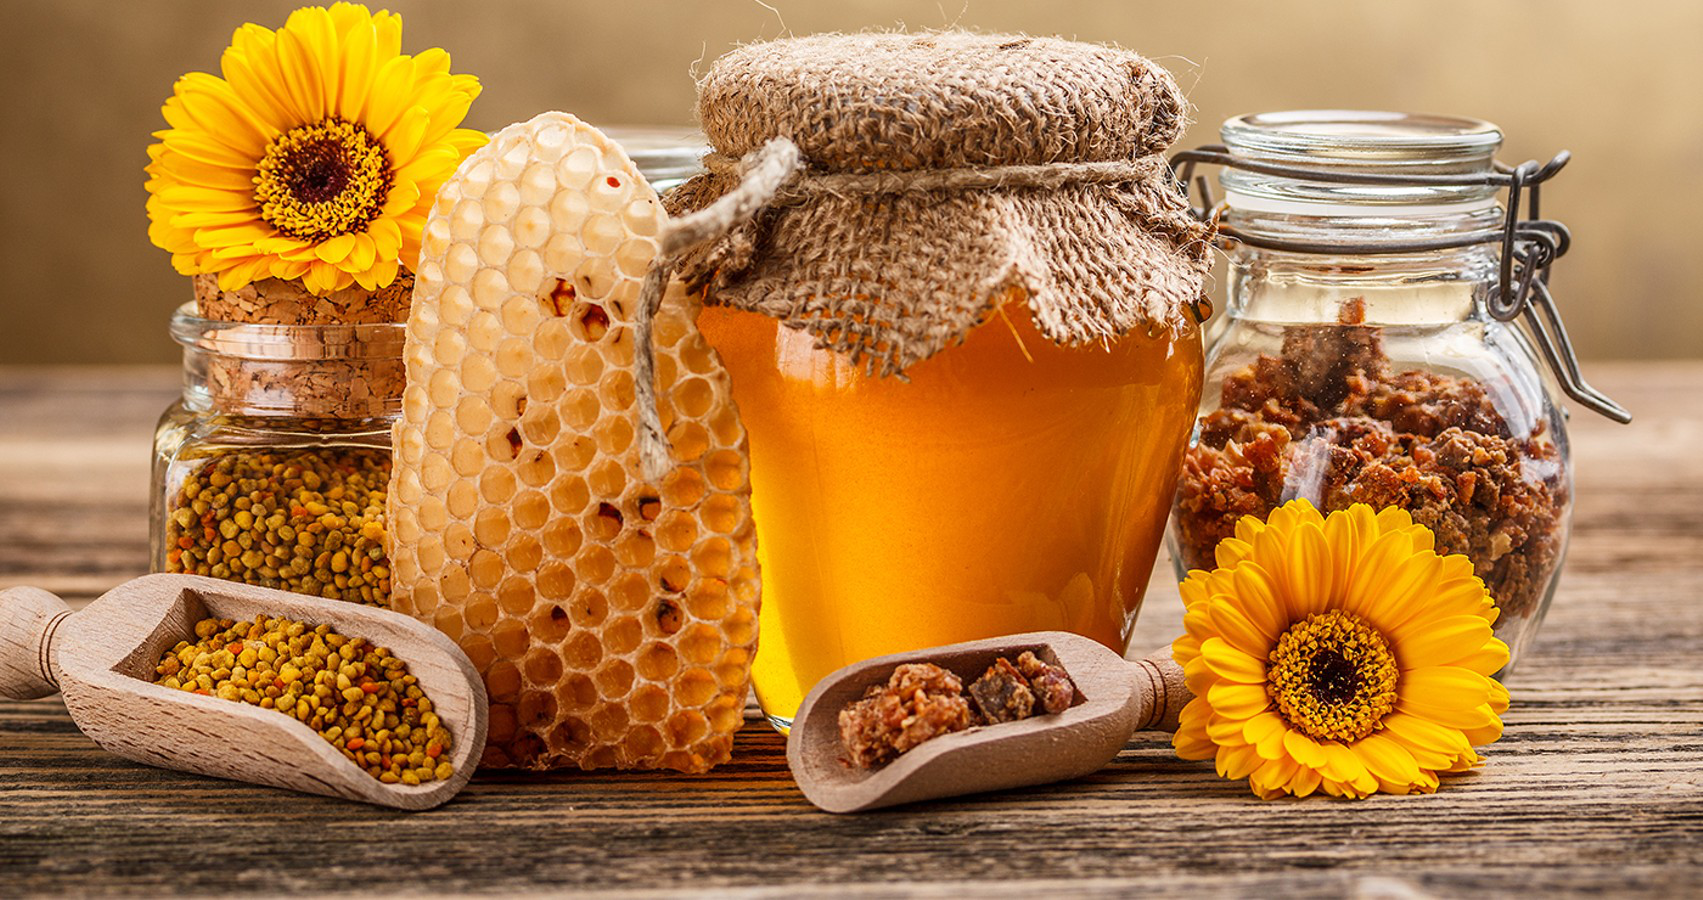 Японія почала експорт додаткових обсягів українського меду